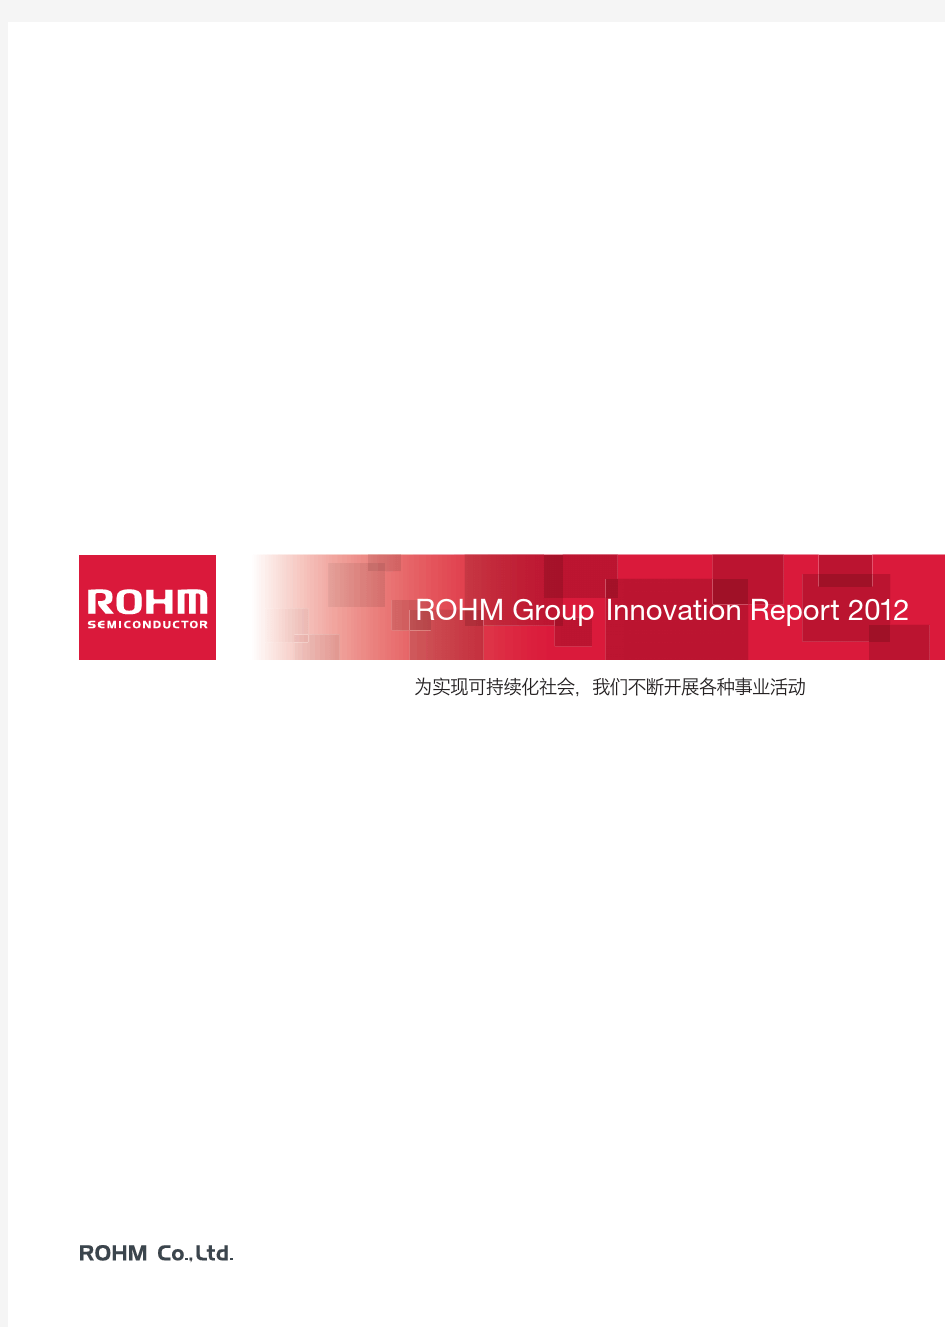 罗姆(ROHM)CSR报告2012年最新版